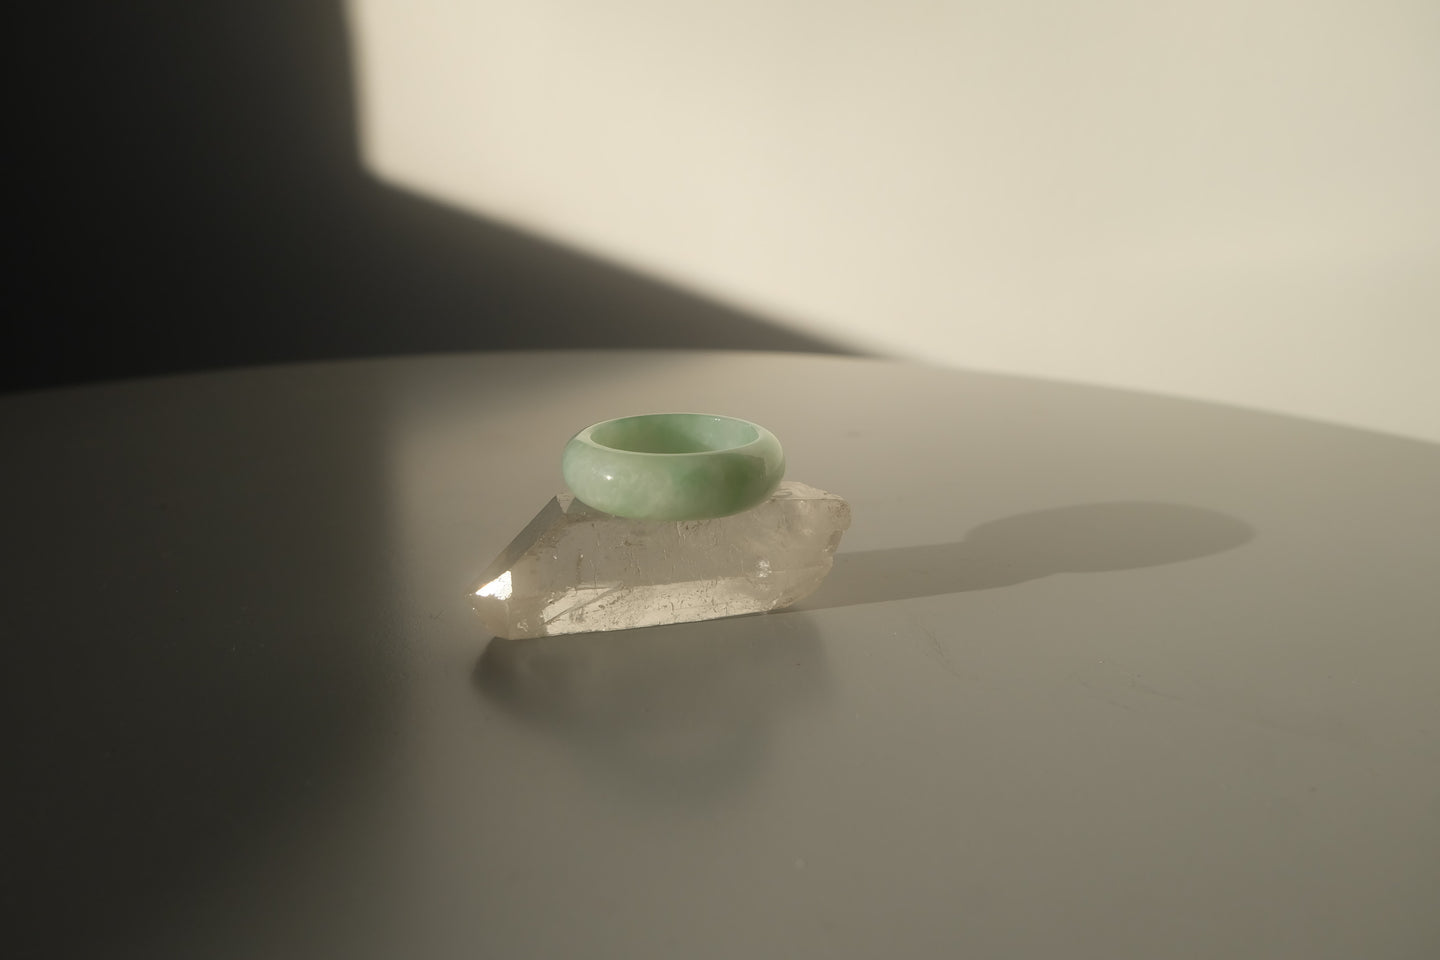 Green Jadeite Ring No. 007 - size 8.75